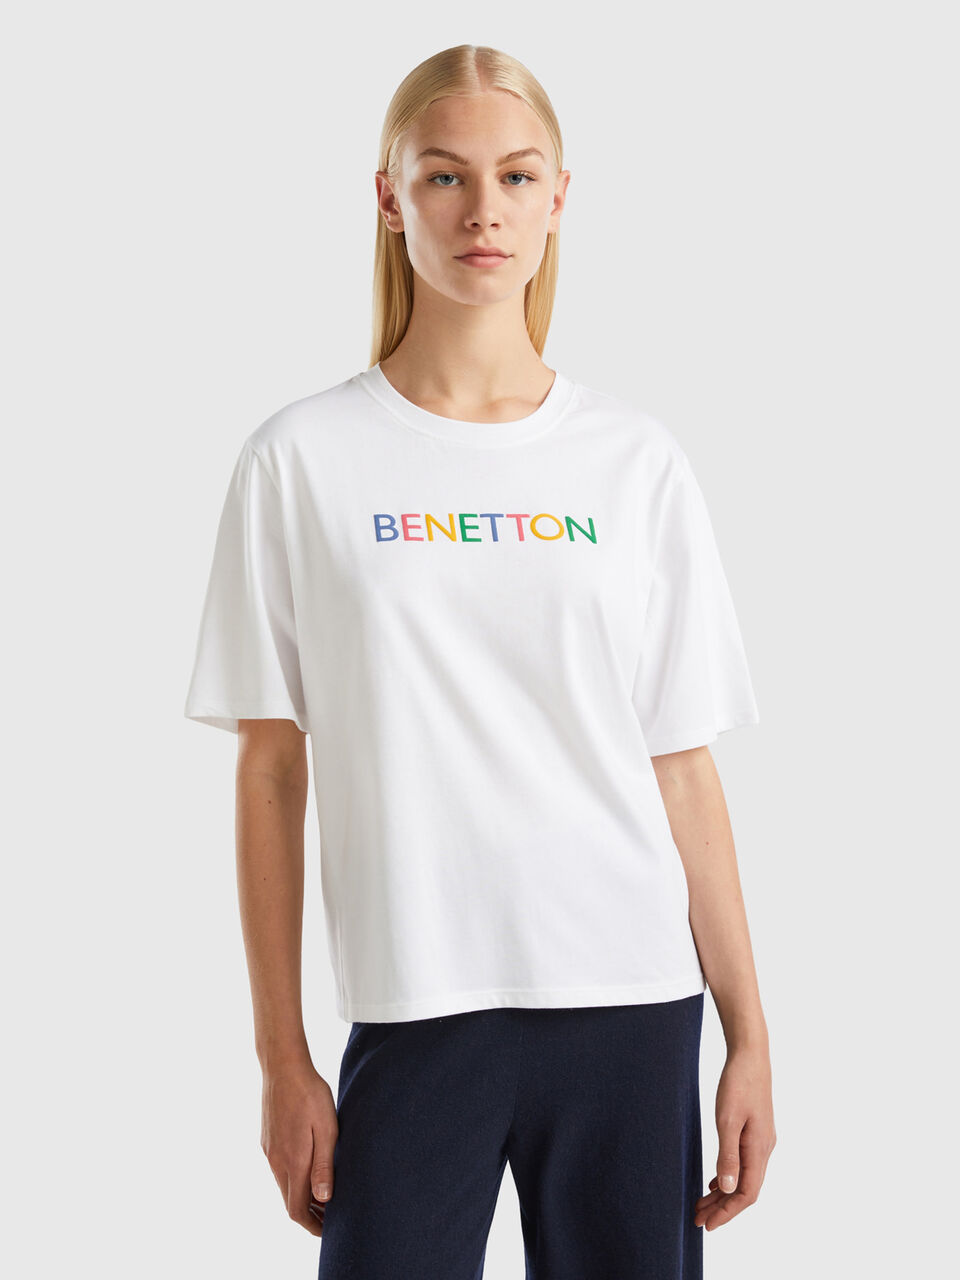 T-shirt with logo Benetton text - White 